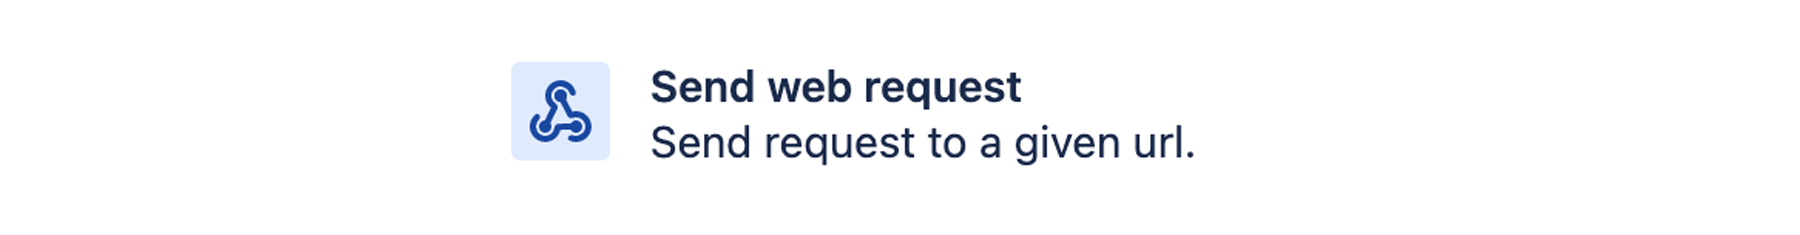 Send web request (Wyślij żądanie internetowe)